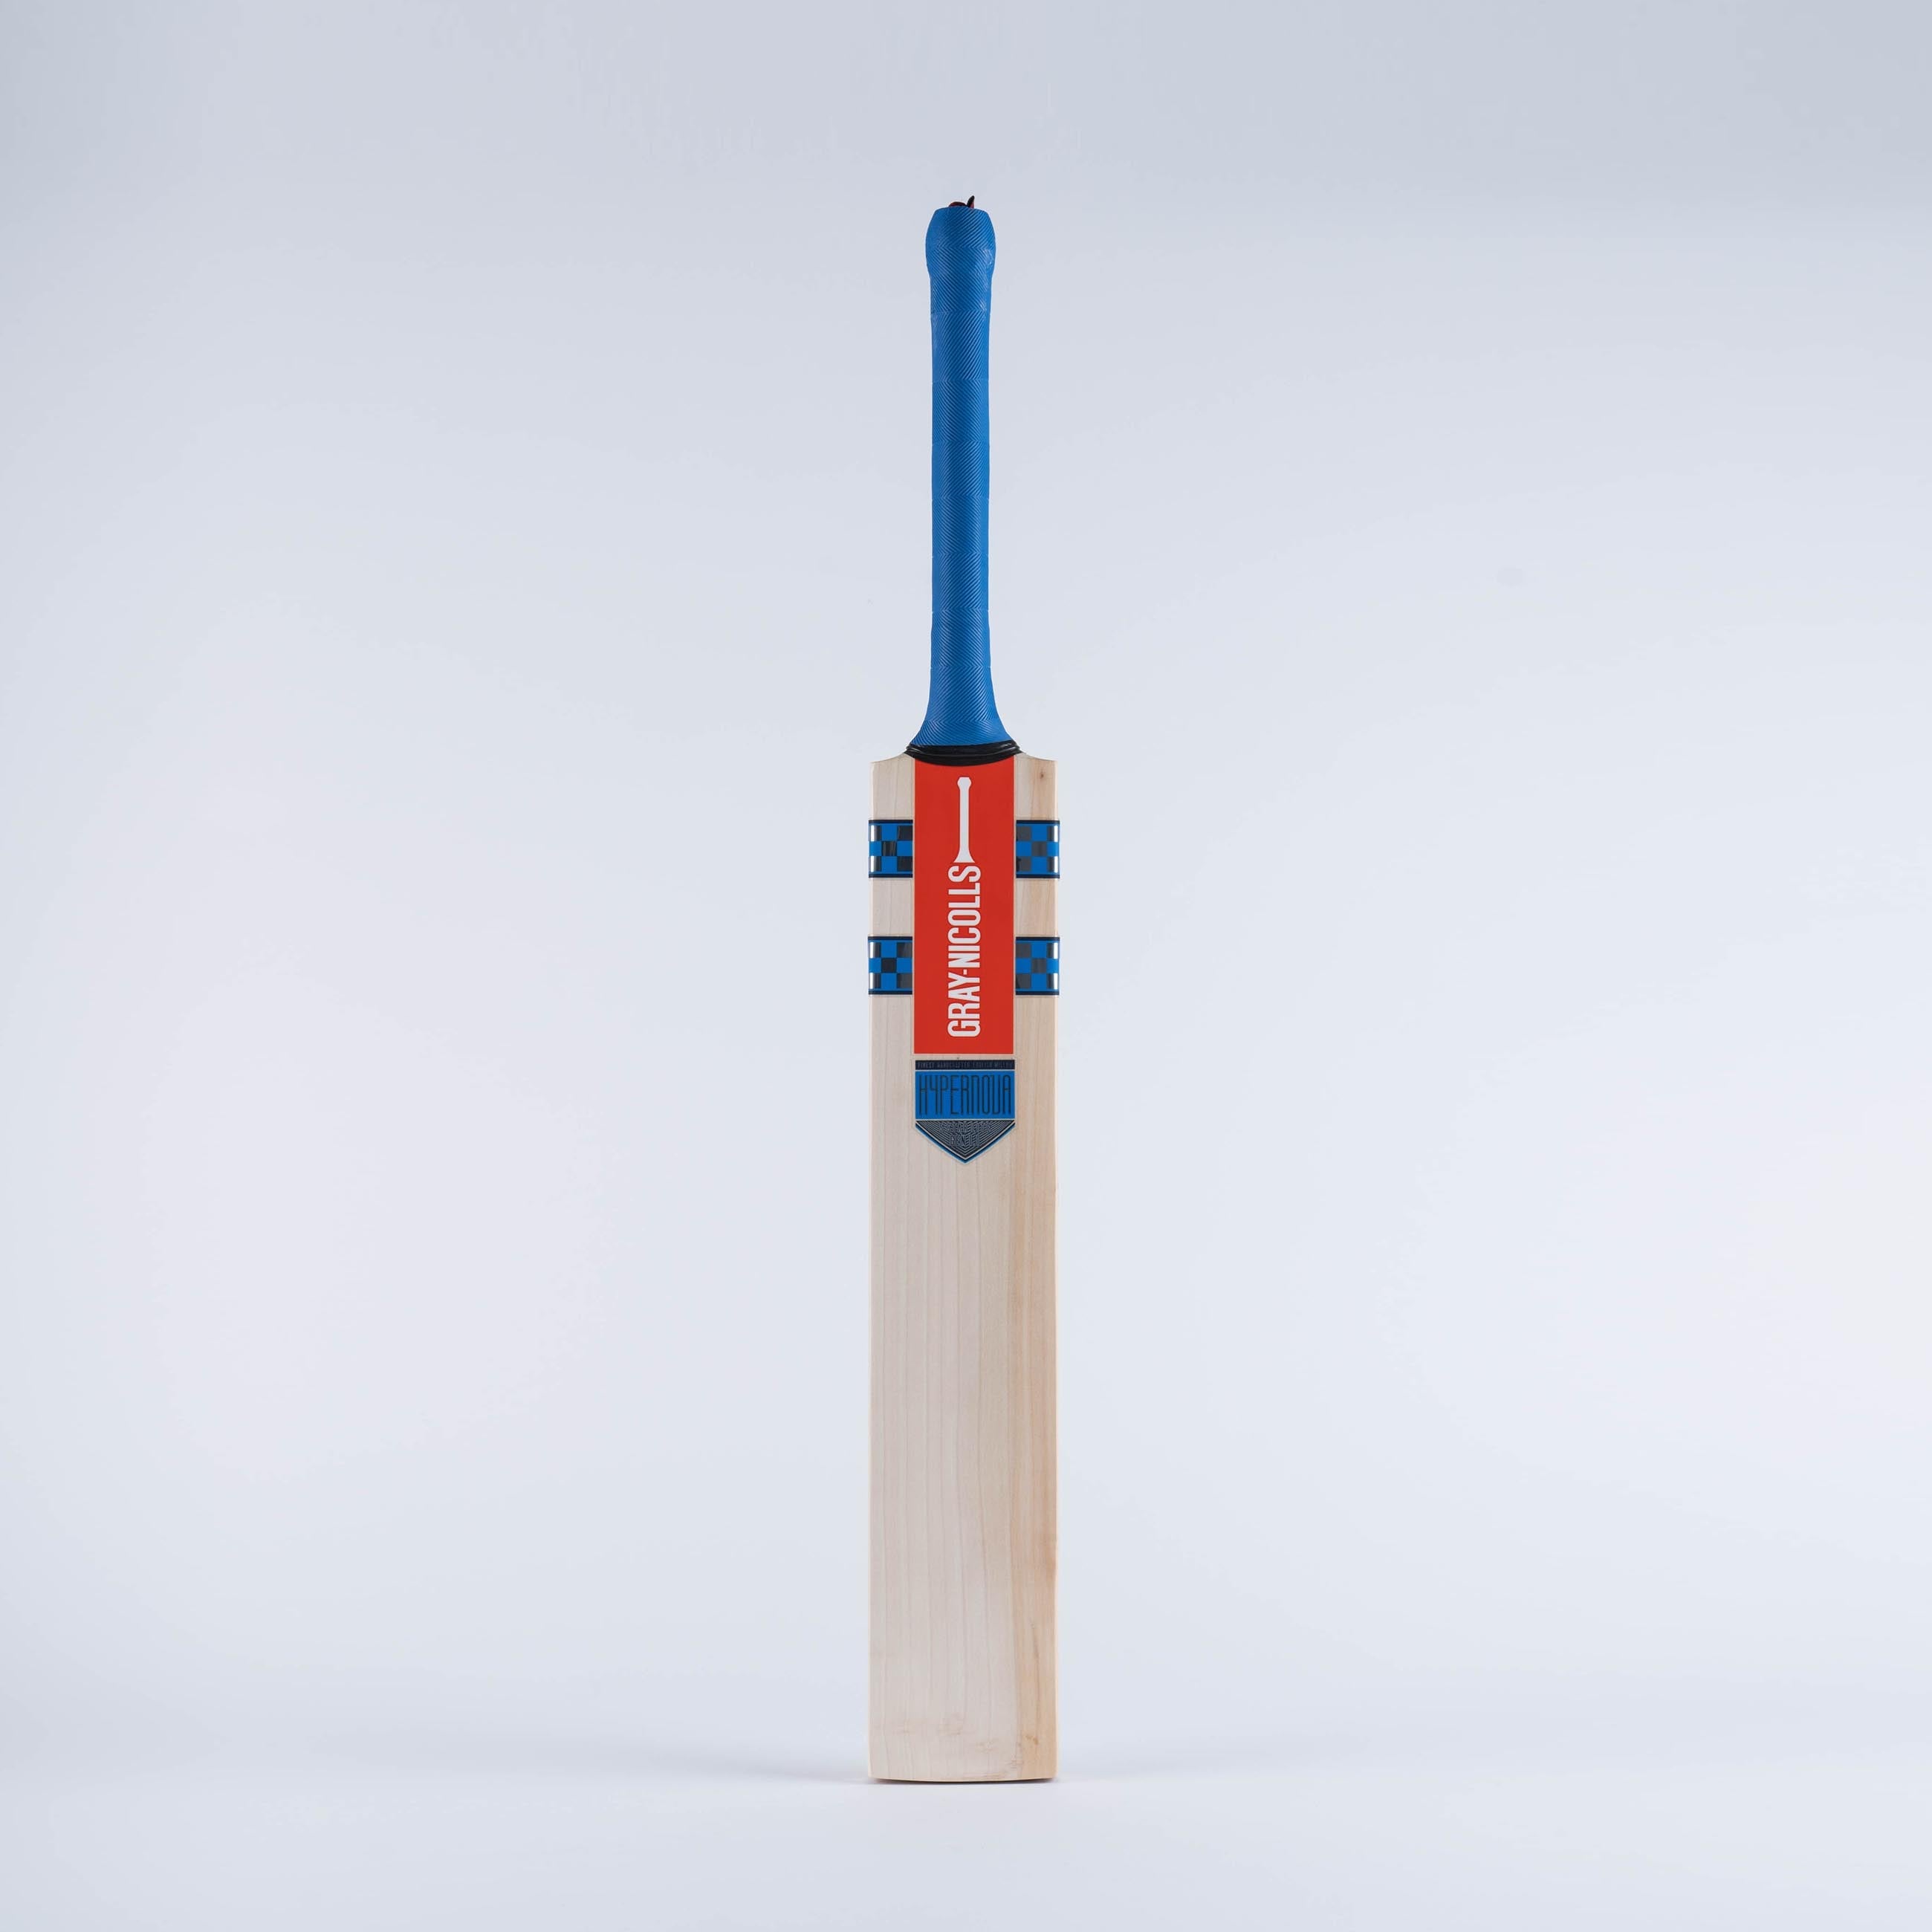 Hypernova Gen 1.1 5 Star Lite Junior Cricket Bat